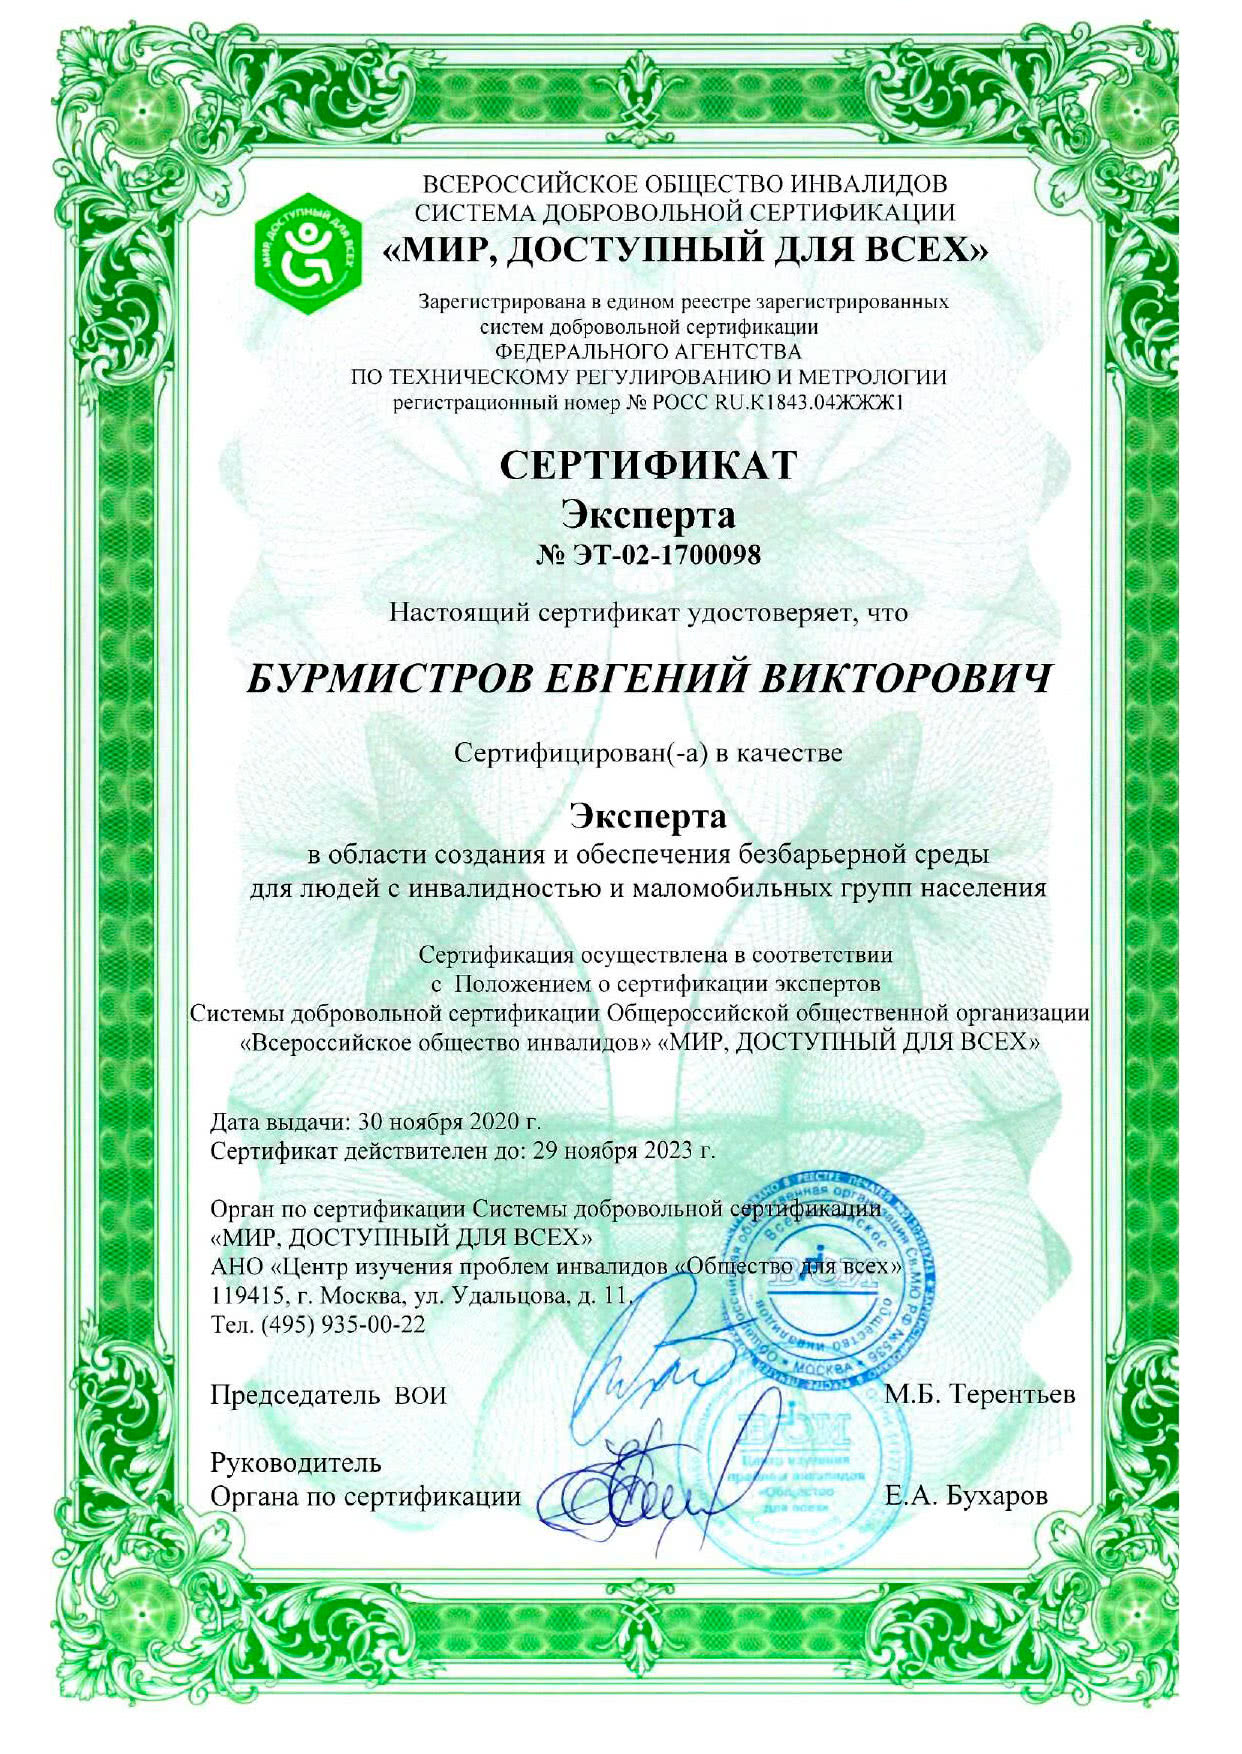 Сертификат эксперта СДС ВОИ Бурмистров Е. (2020-2023)